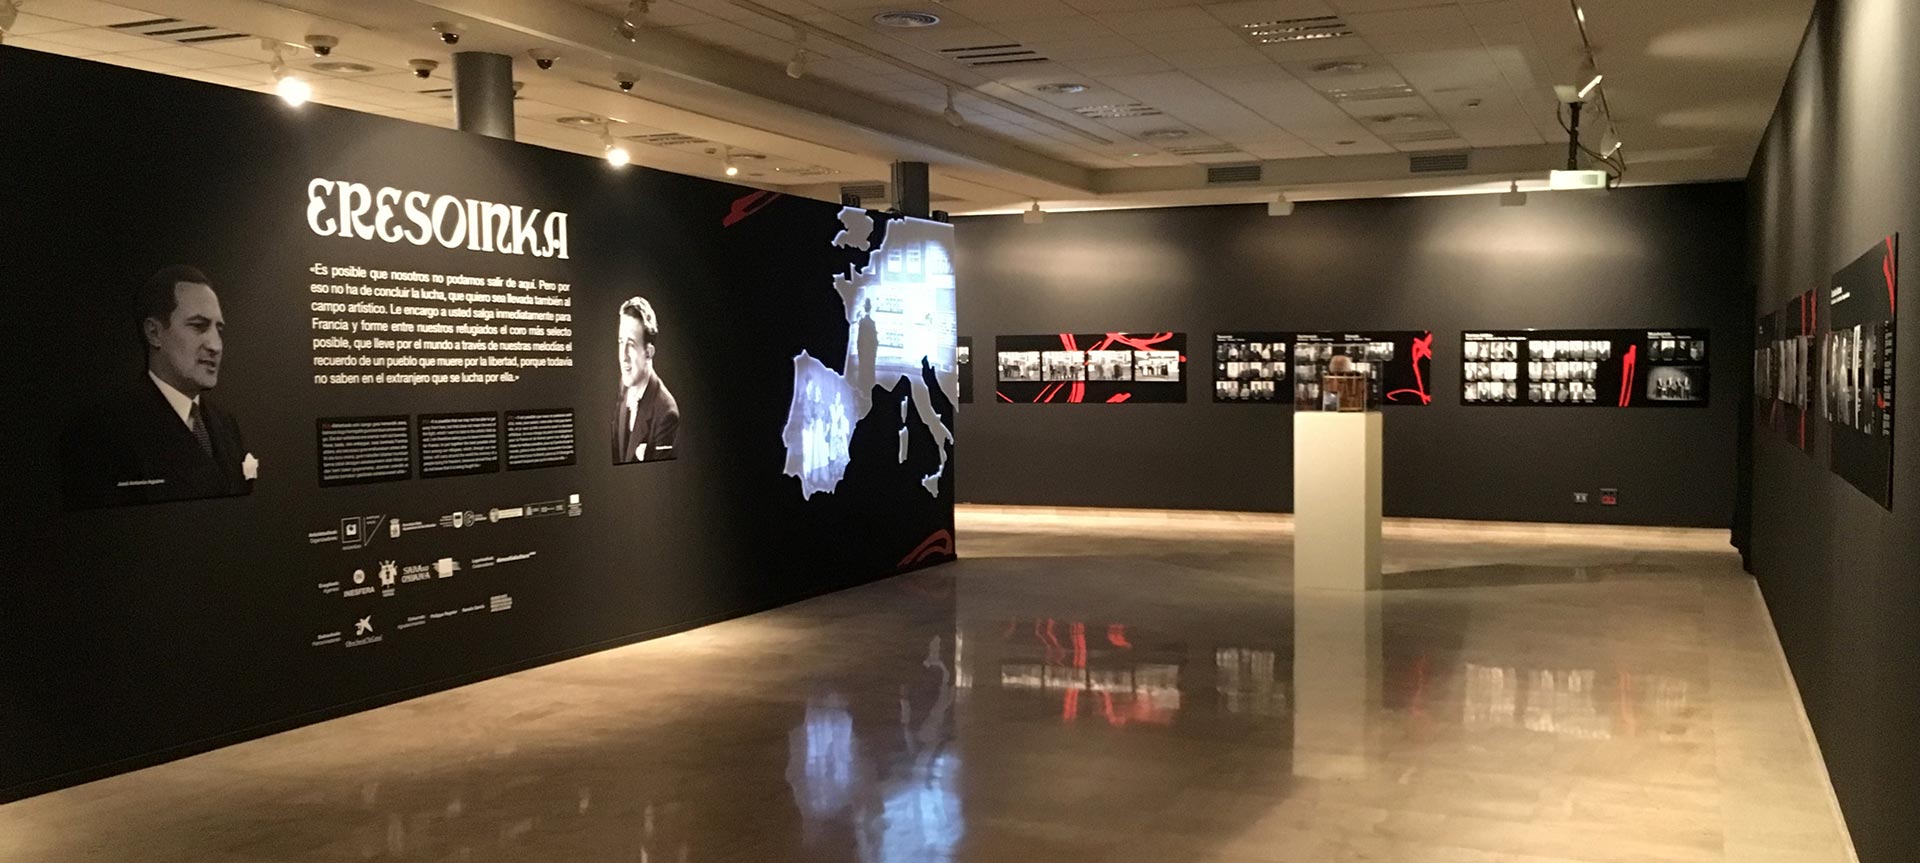 Imagen de la exposición resultante del comisariado de Inesfera para la capitaliad cultural europea de Donostia 2016.